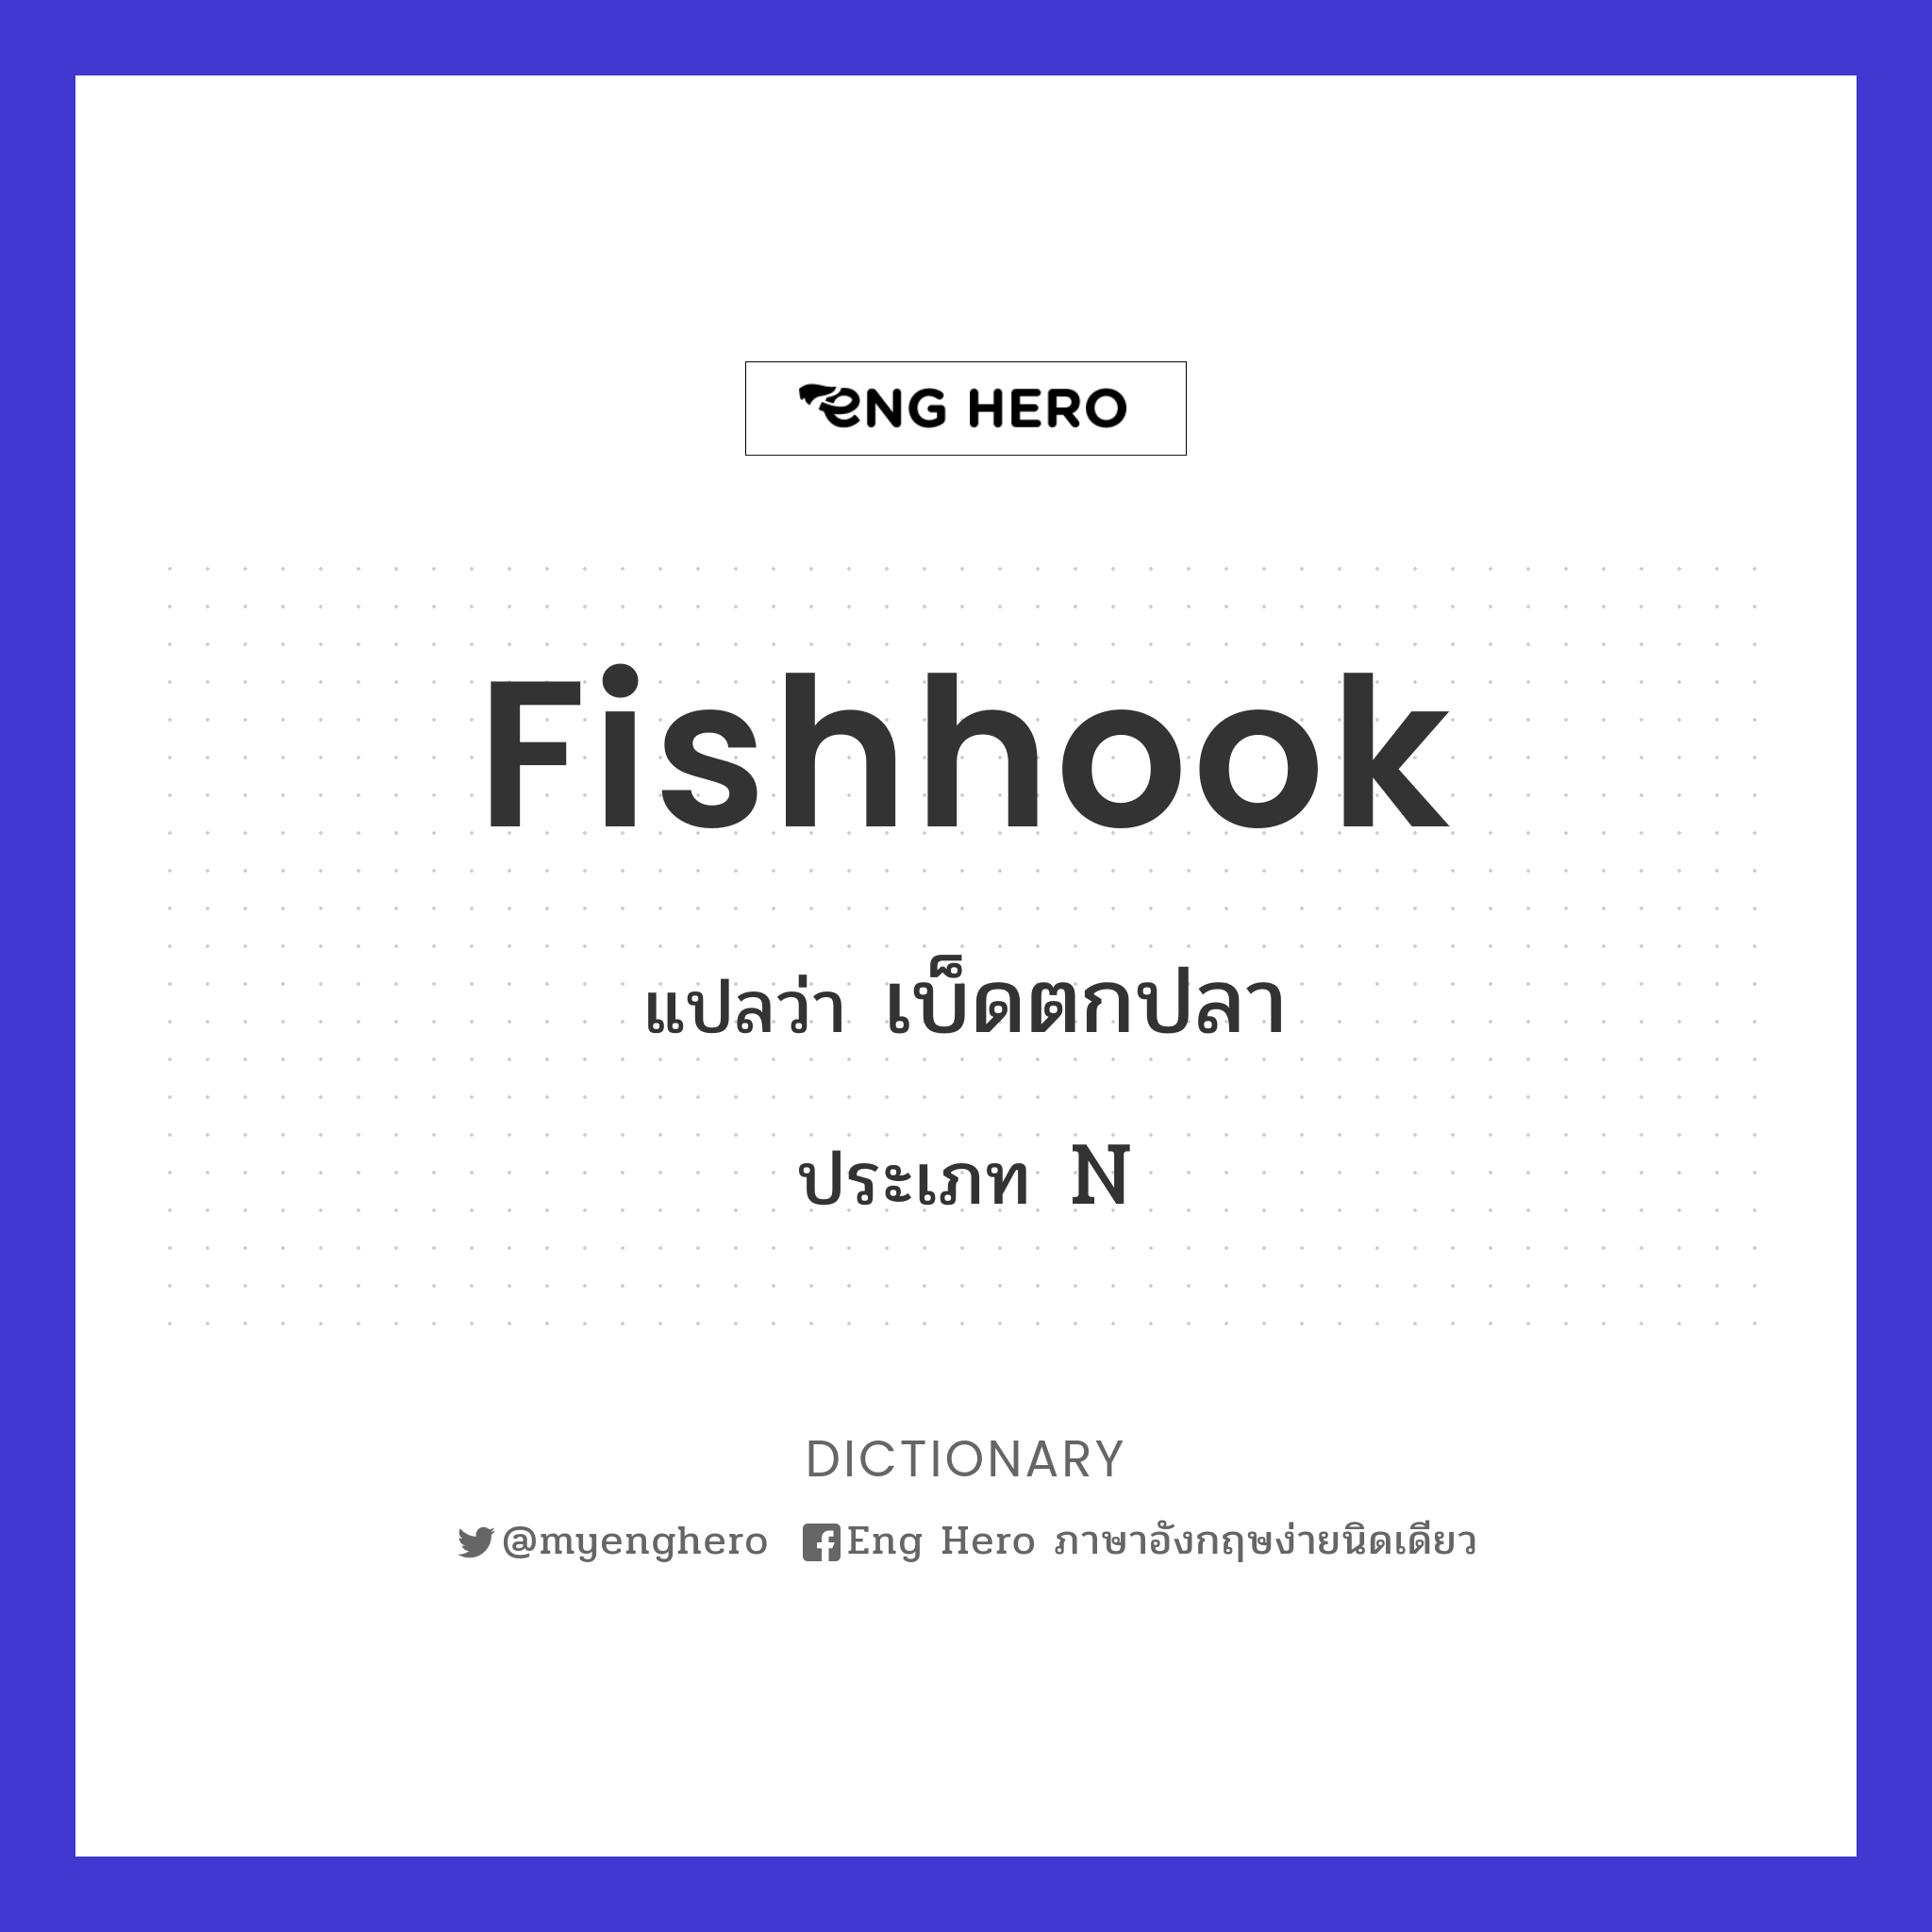 fishhook